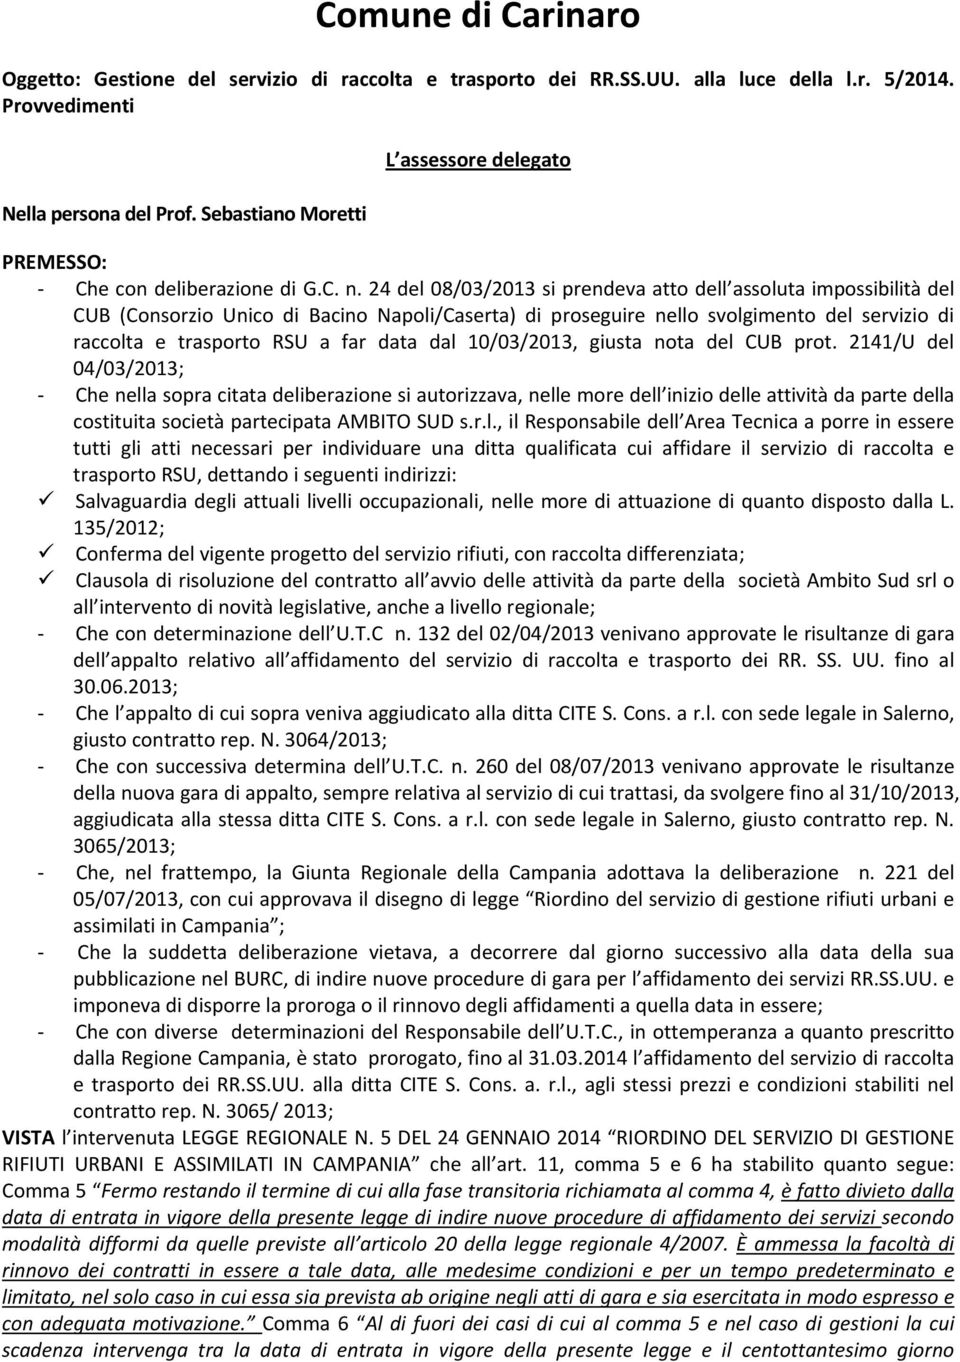 24 del 08/03/2013 si prendeva atto dell assoluta impossibilità del CUB (Consorzio Unico di Bacino Napoli/Caserta) di proseguire nello svolgimento del servizio di raccolta e trasporto RSU a far data